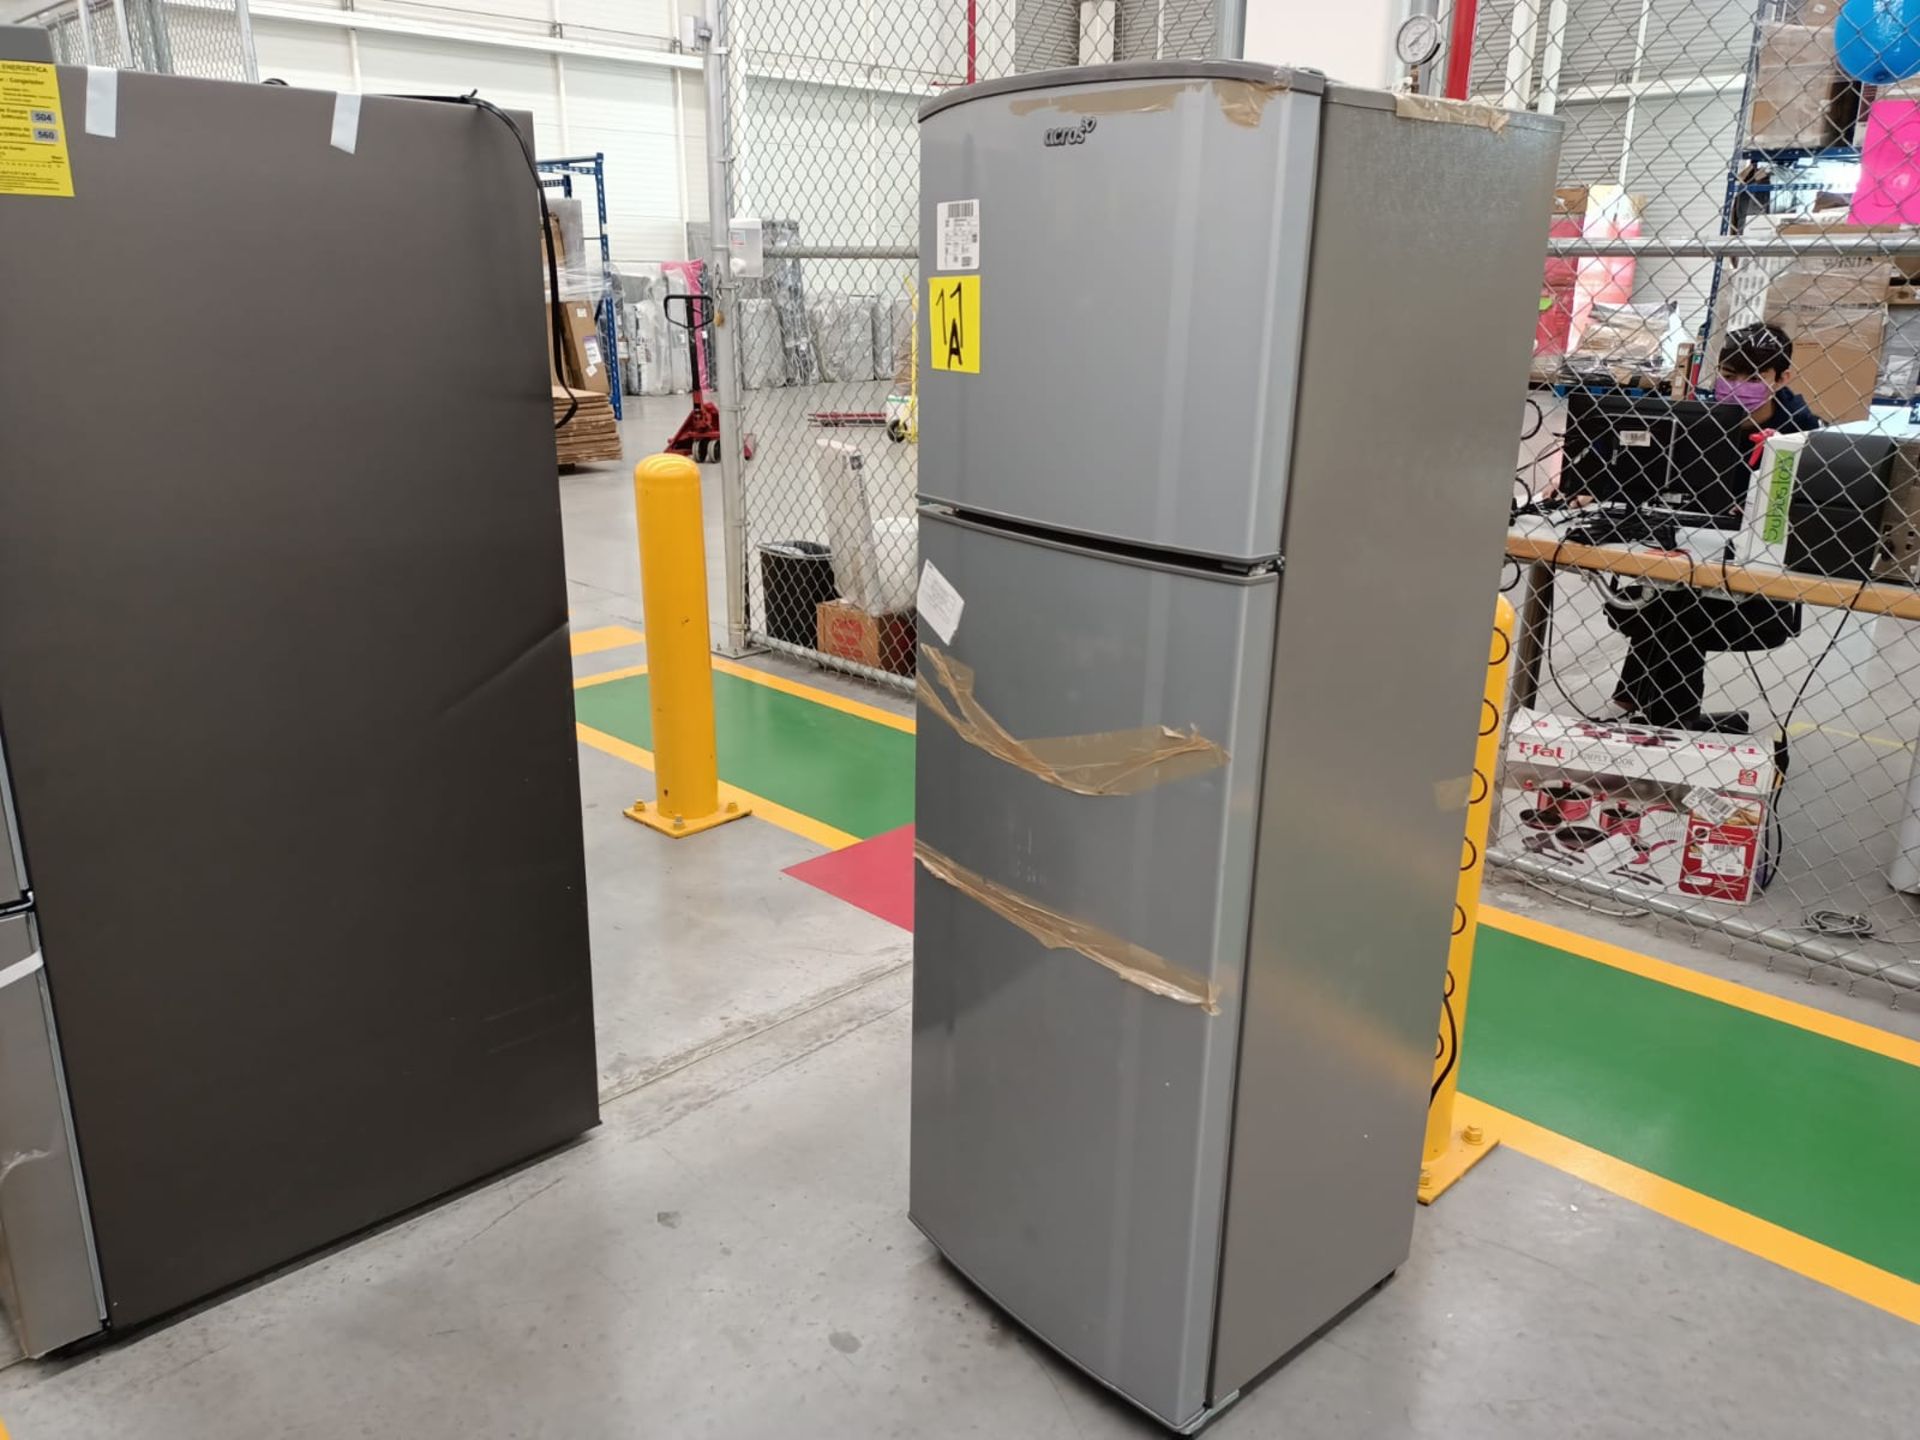 Lote de 2 refrigeradores incluye: 1 refrigerador marca Samsung, modelo RF22A4010S9/EM - Image 45 of 51